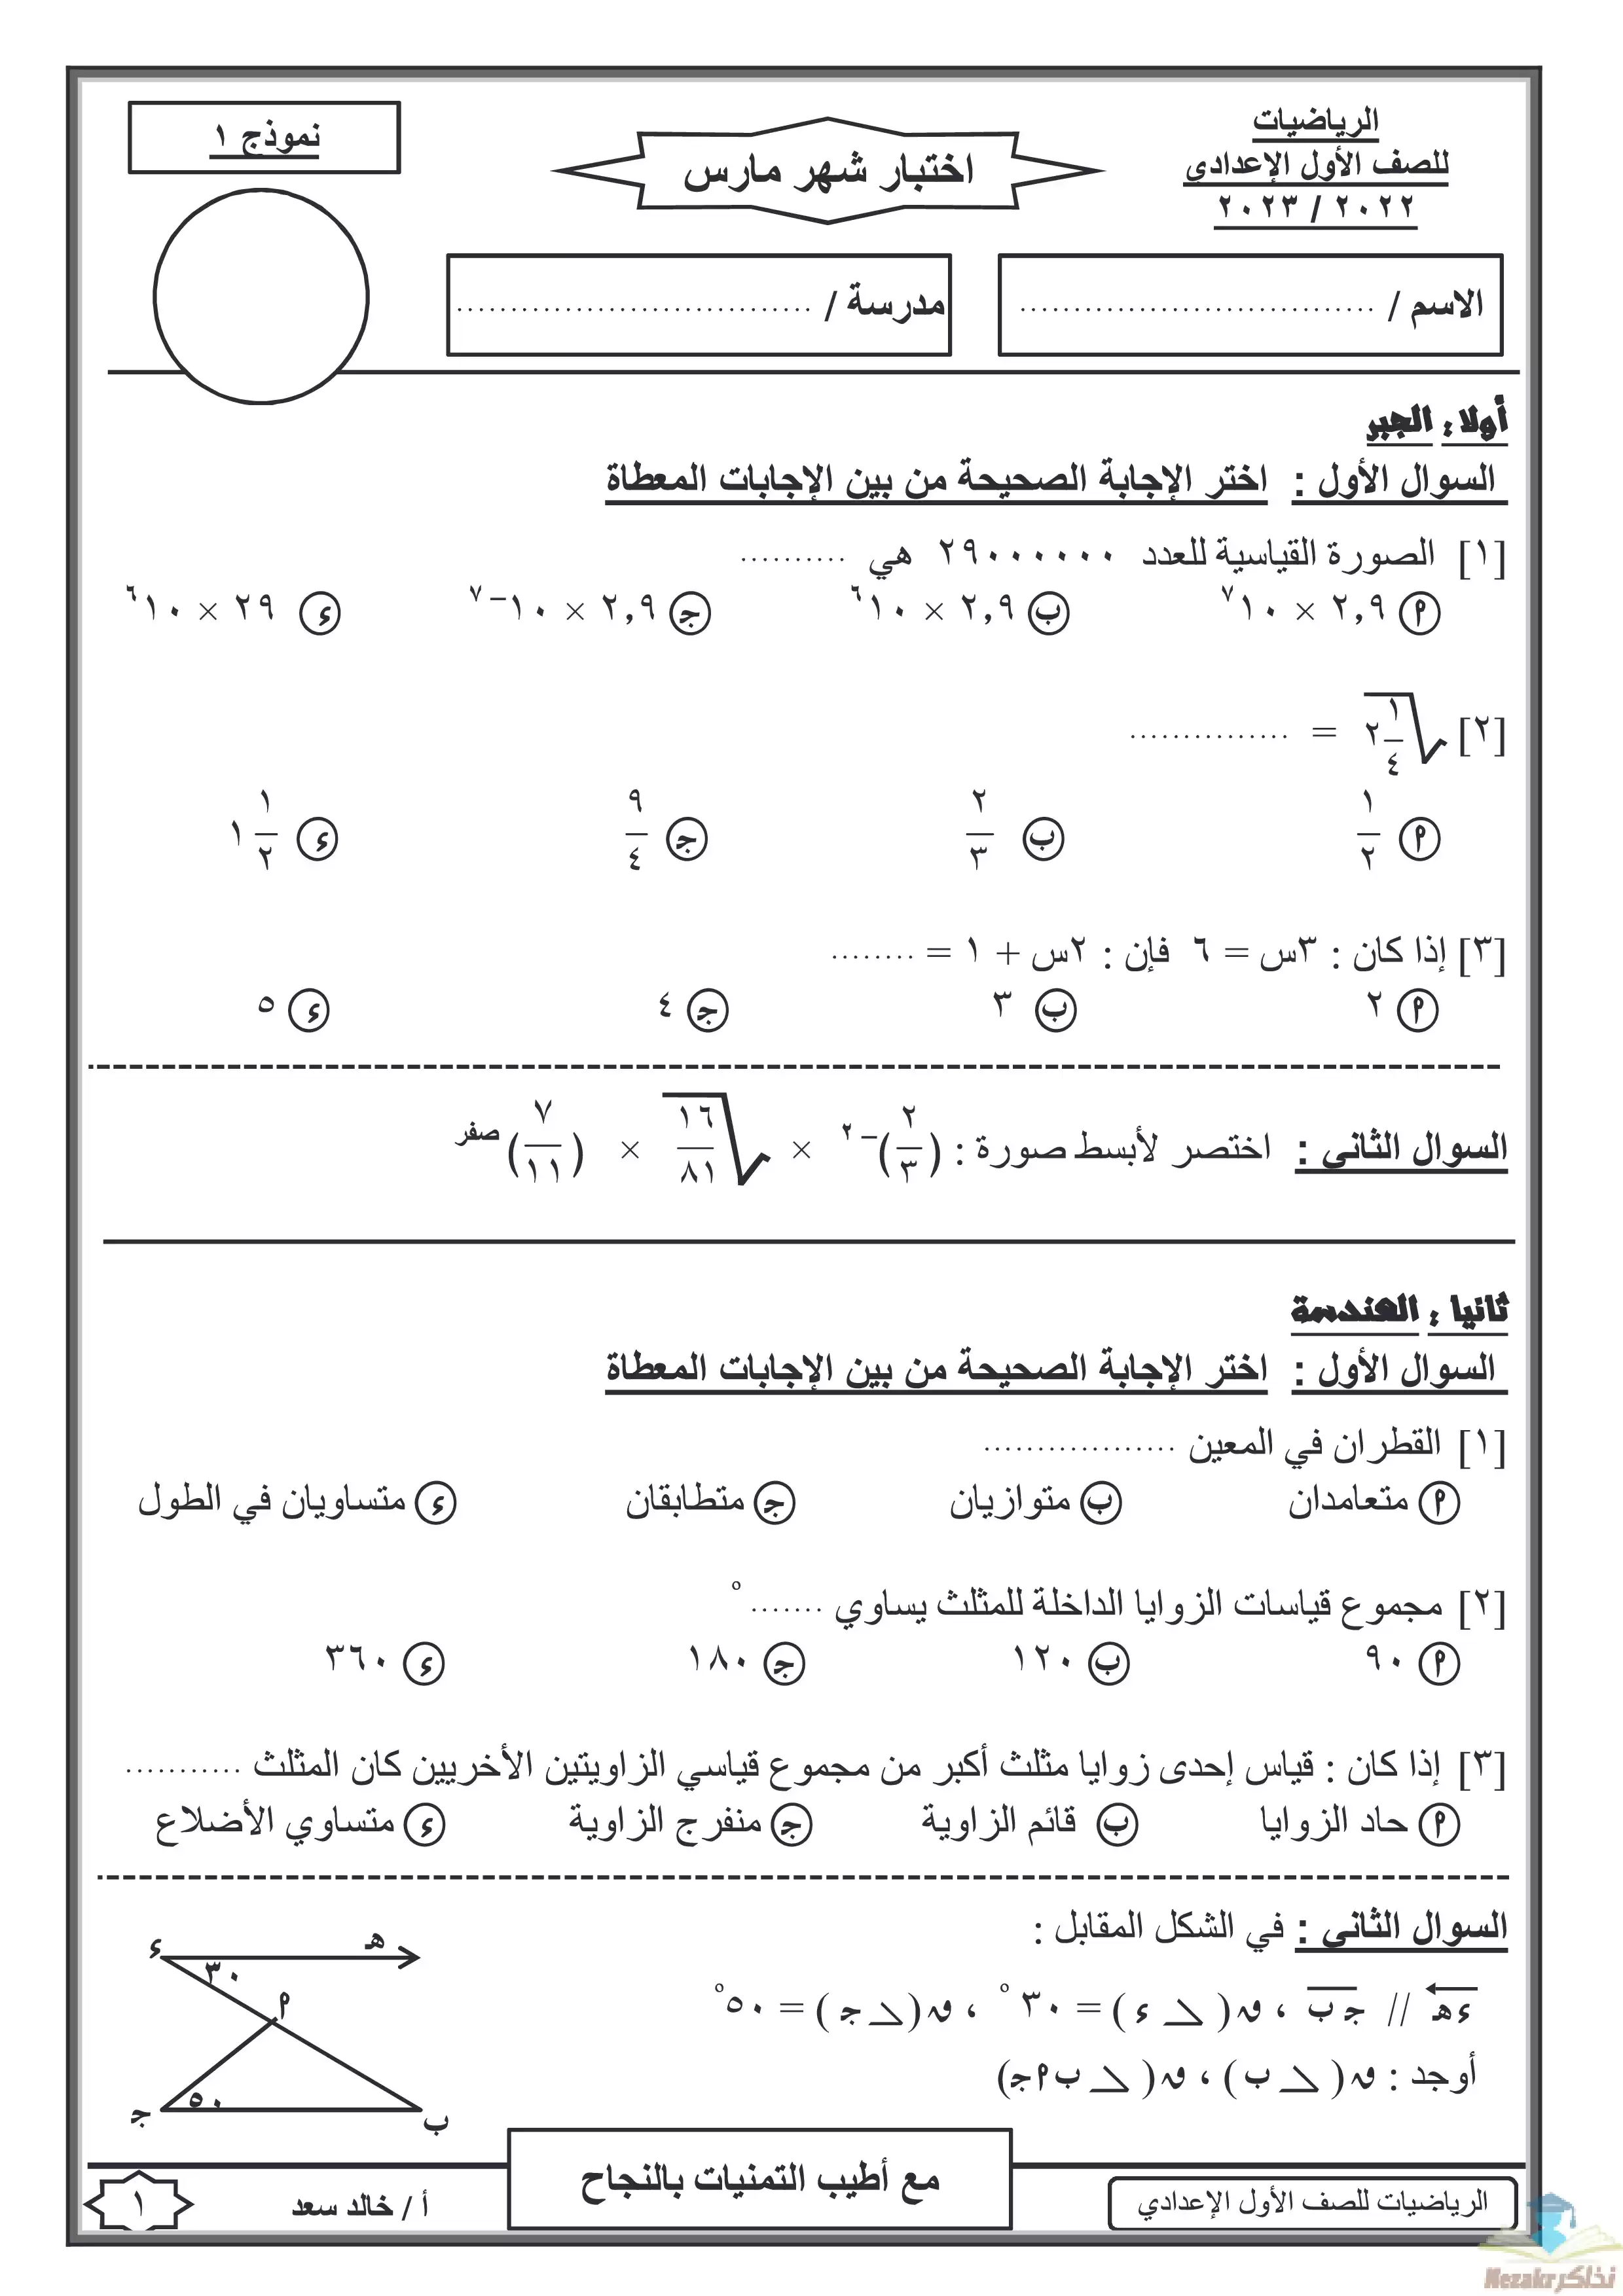 تحميل نماذج اختبارات شهر مارس للصف الأول الإعدادي في الرياضيات من إعداد أ: خالد سعد